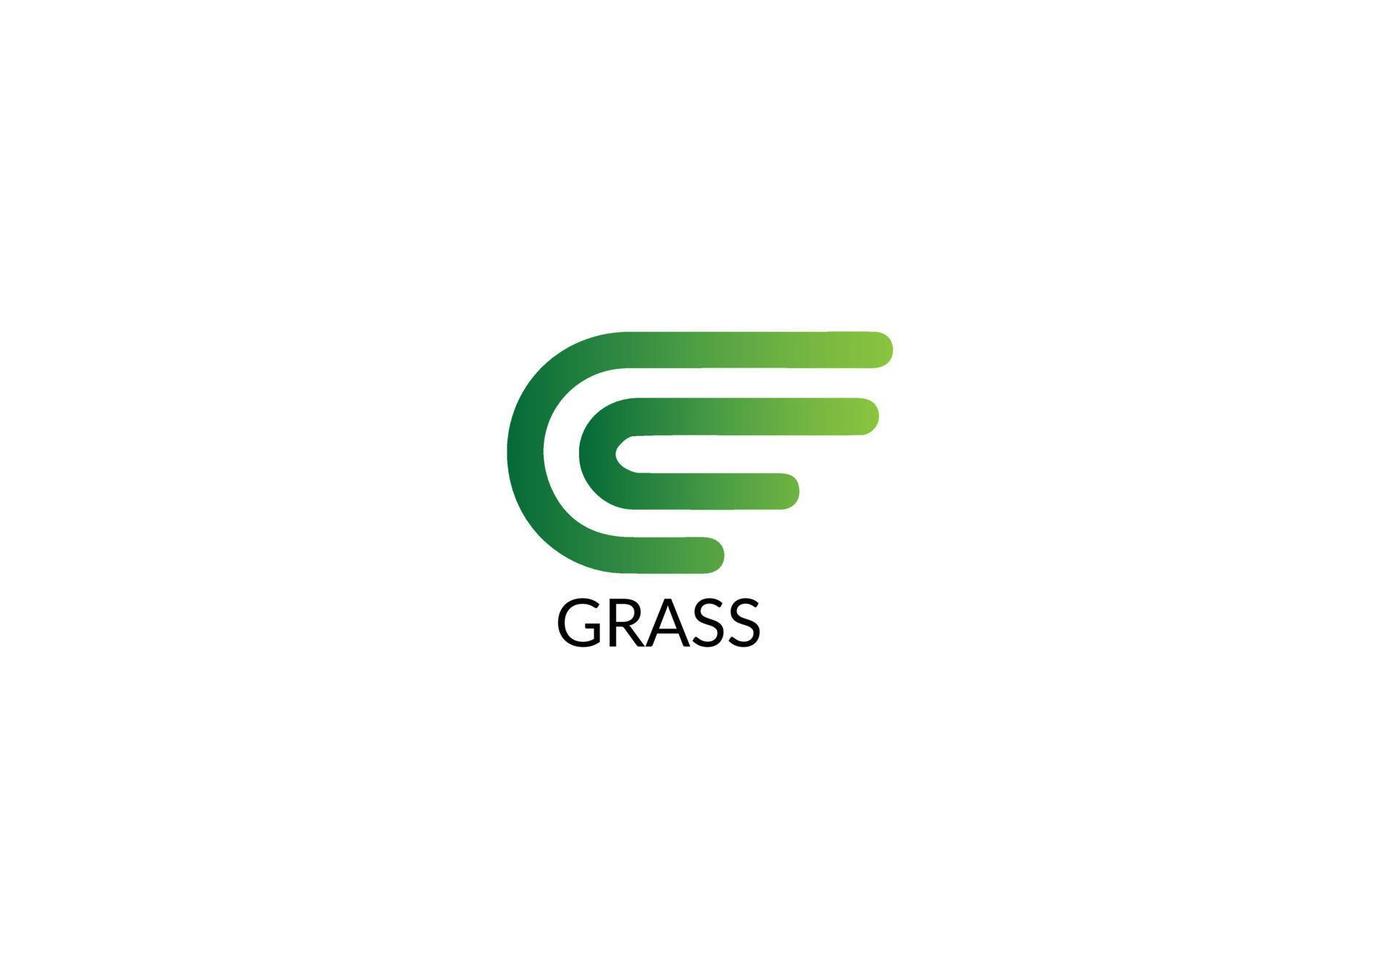 Gras abstrakt g Brief modernes Emblem Logo-Design vektor